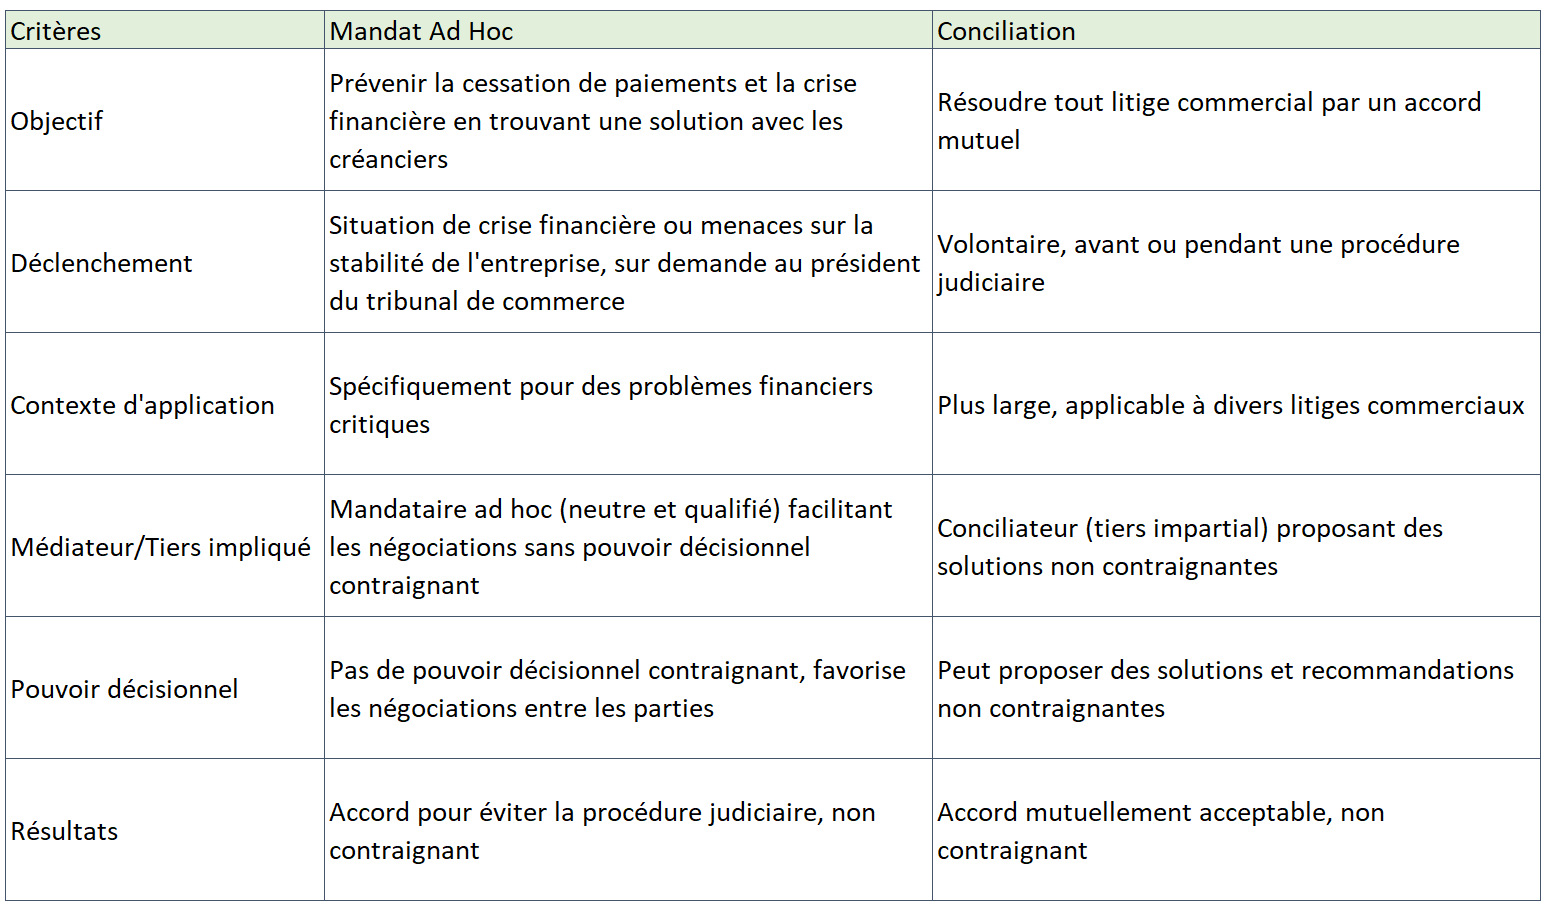 Mandat ad hoc vs Conciliation Comparison 